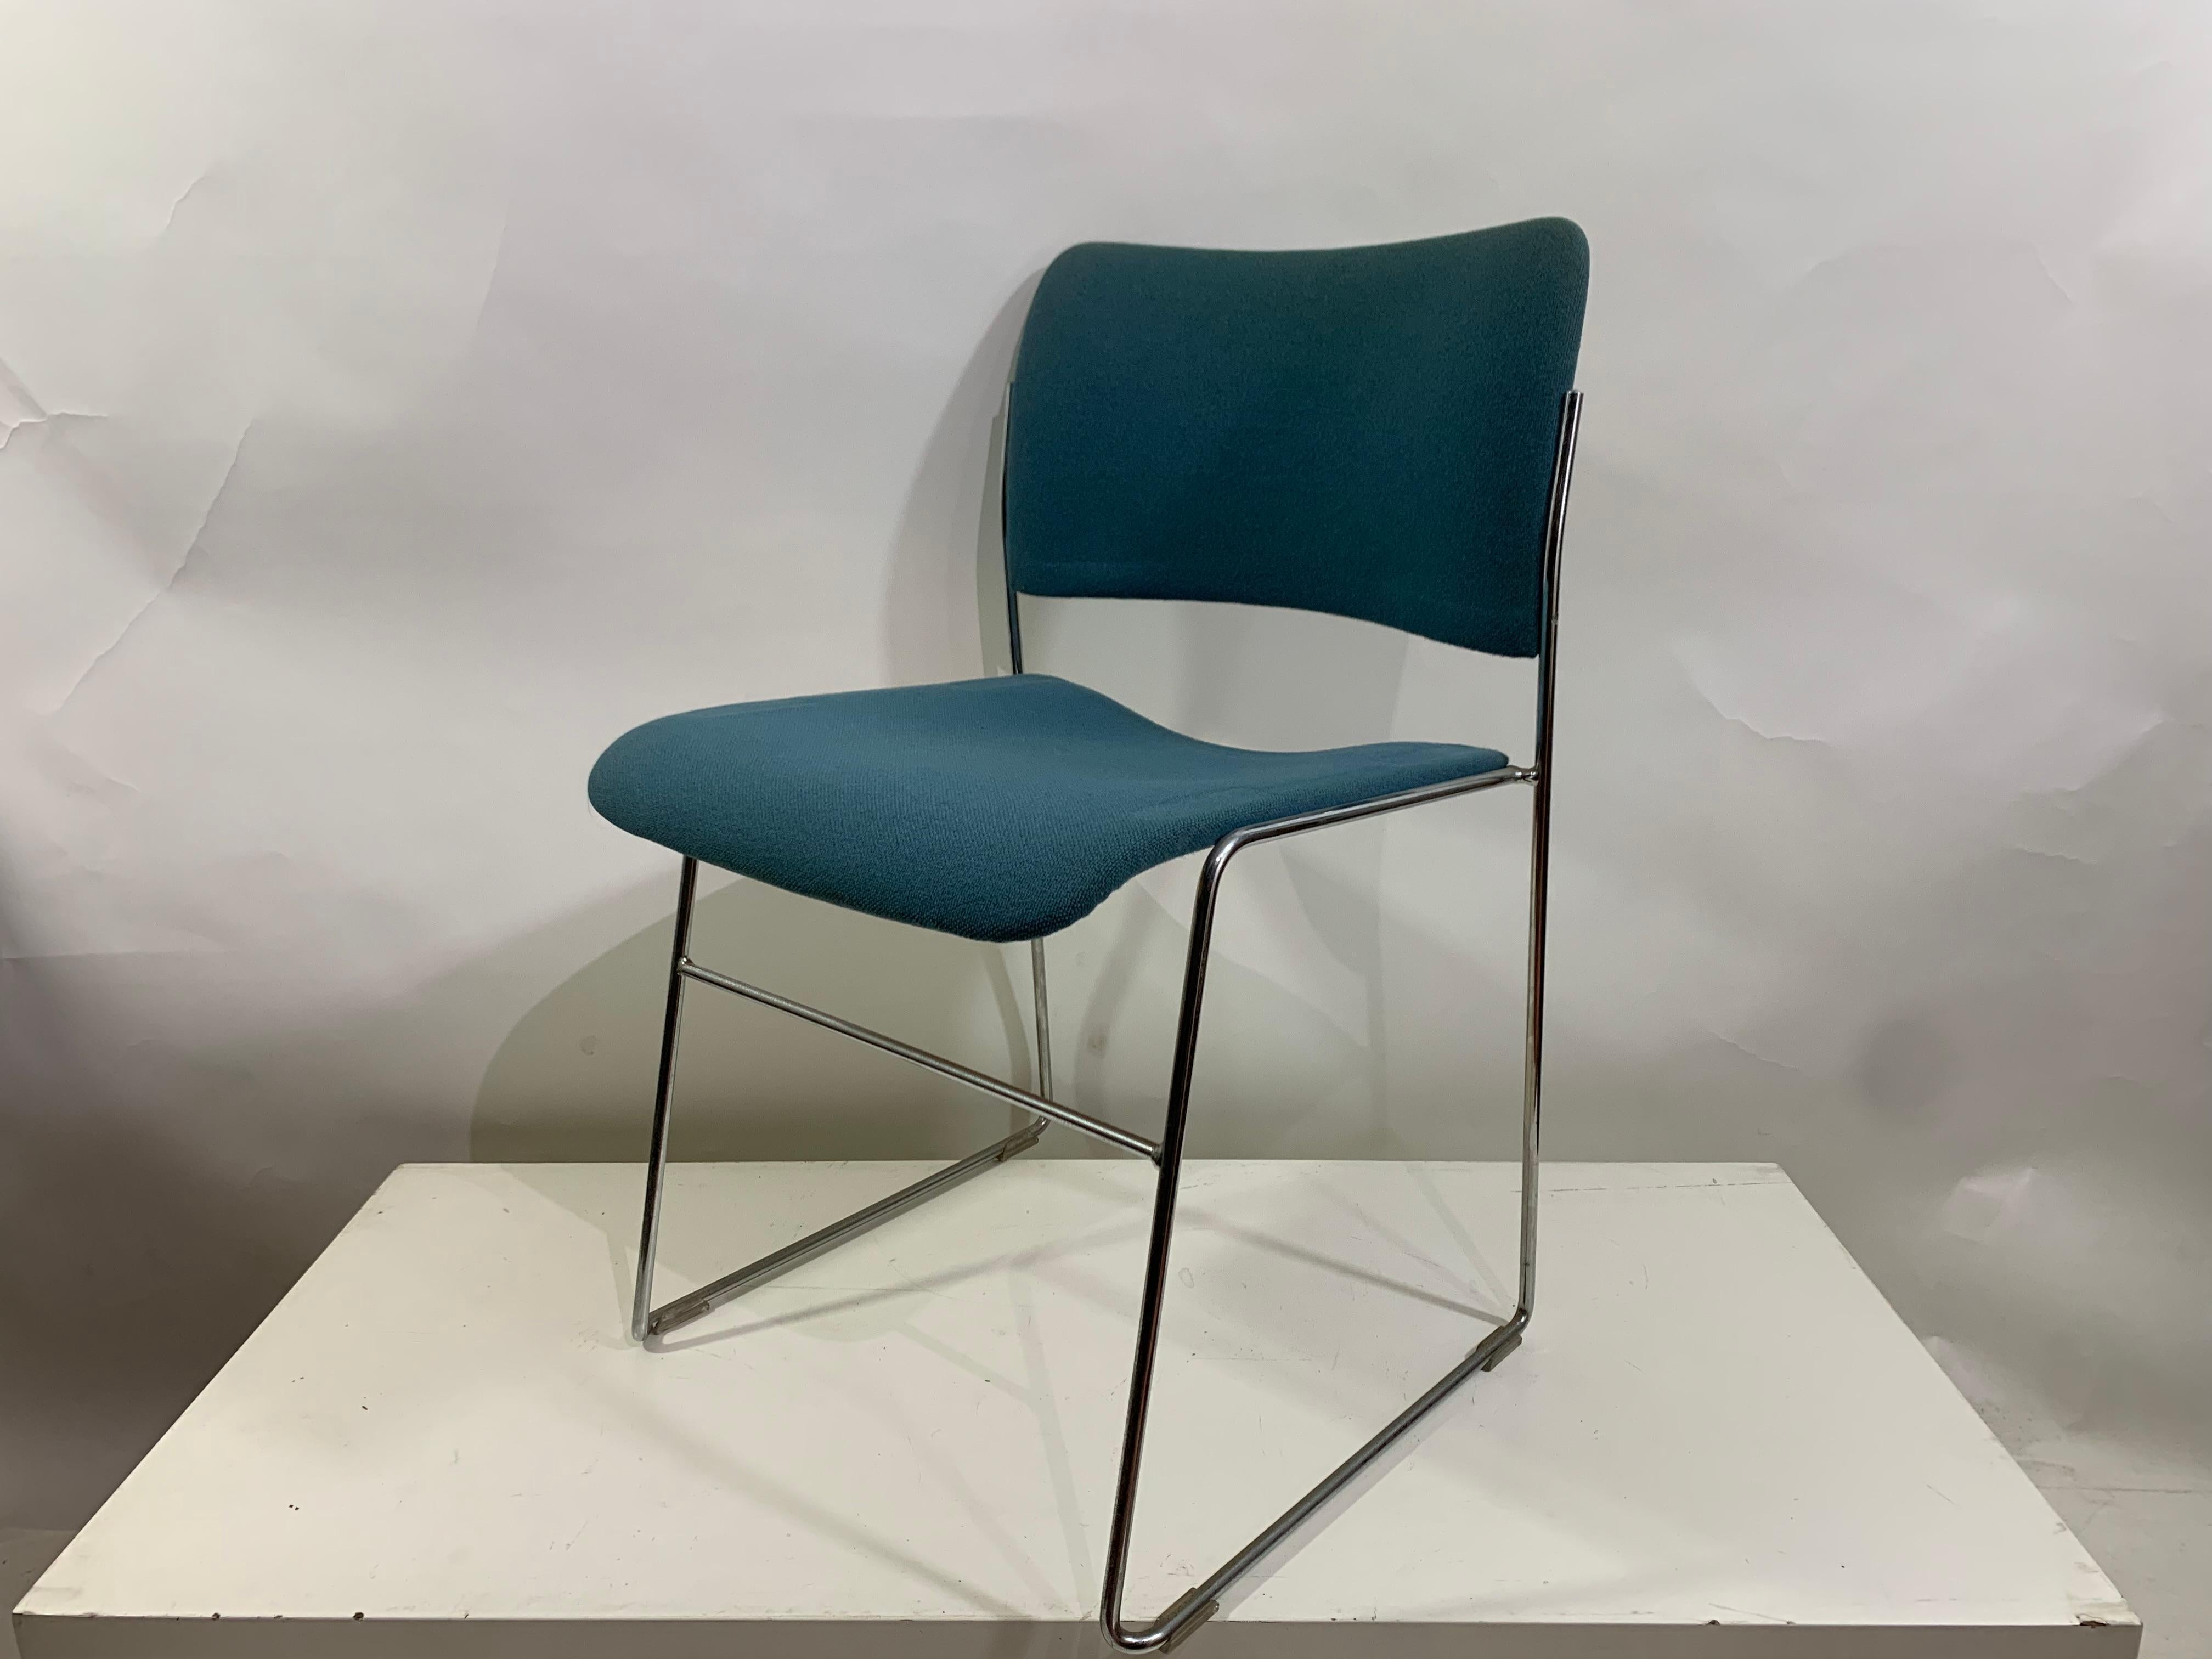 Die Esstischstühle 4/40 von David Rowland sind sehr bequem und wurden mit vielen Designpreisen ausgezeichnet.
Die Stühle sind stapelbar, bestehen aus einem verchromten Metalldrahtgestell und einer geformten Sitzfläche und Rückenlehne aus Metall mit